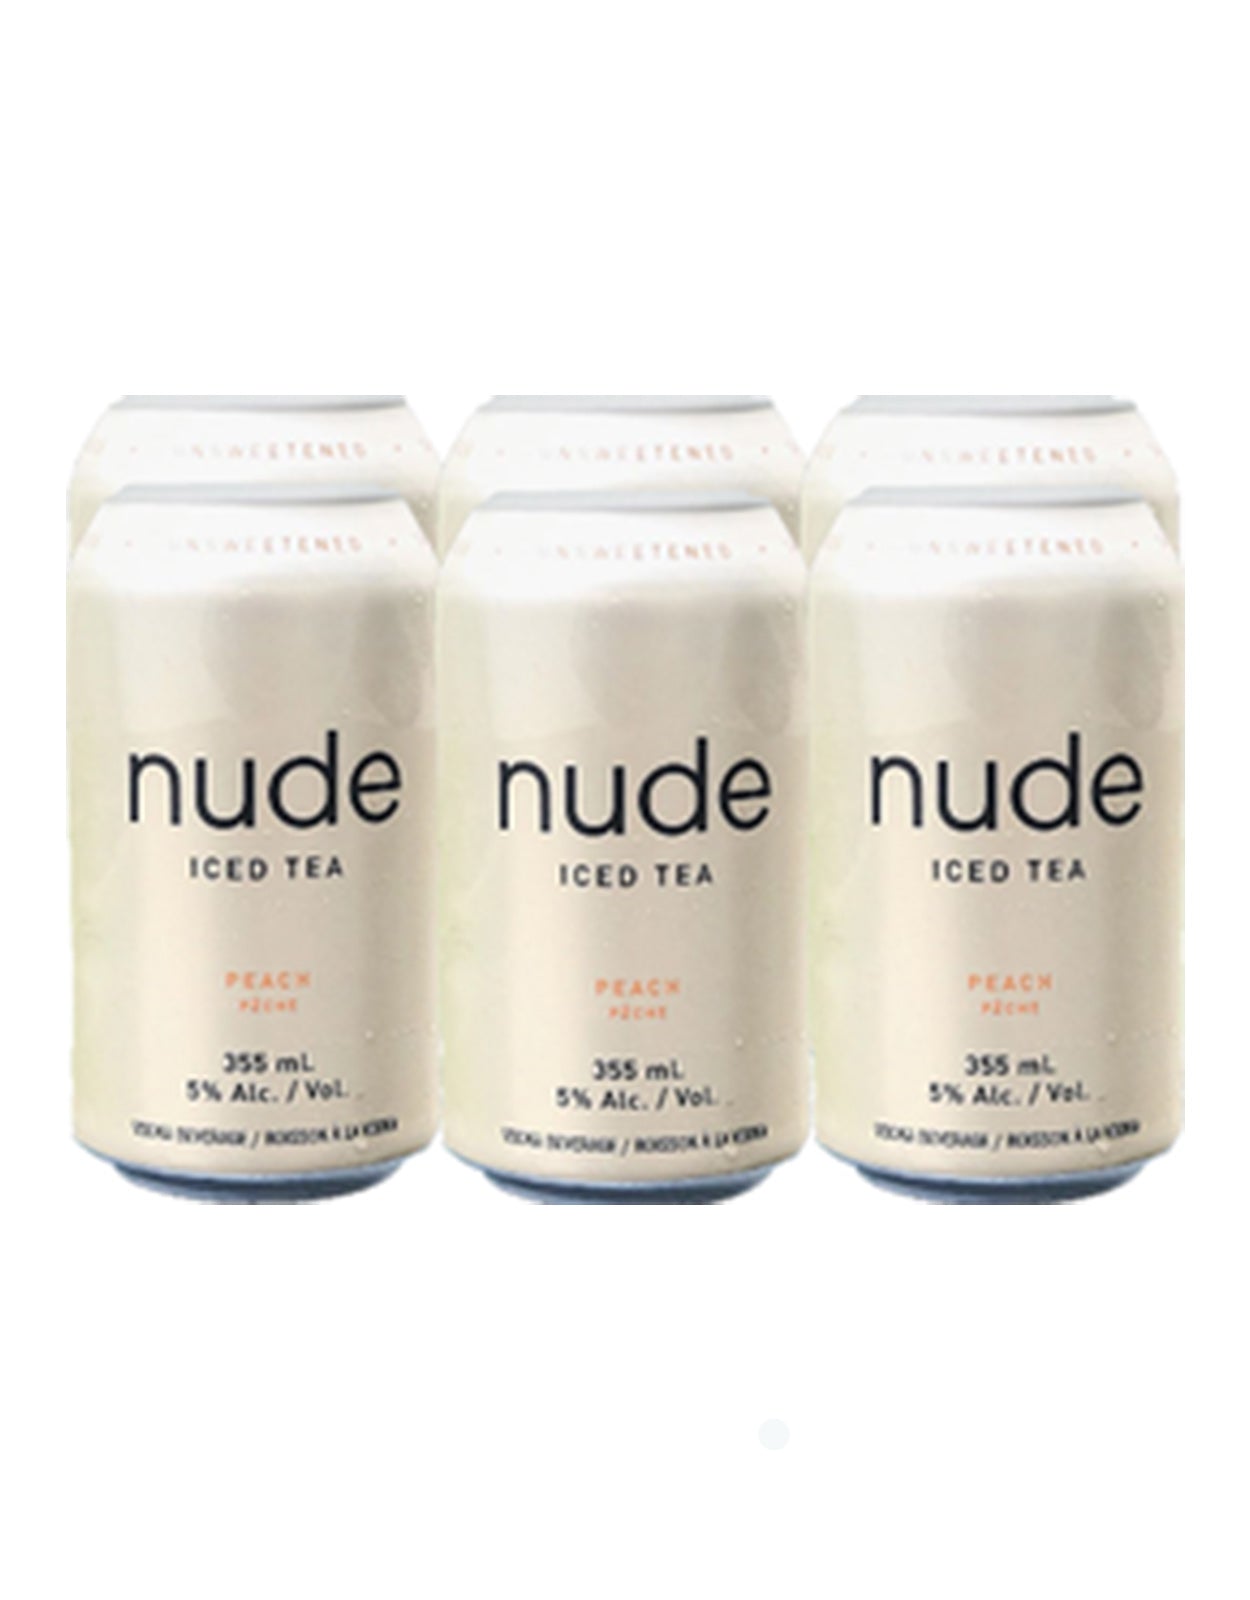 Nude Iced Tea Peach 355 ml - 6 Cans